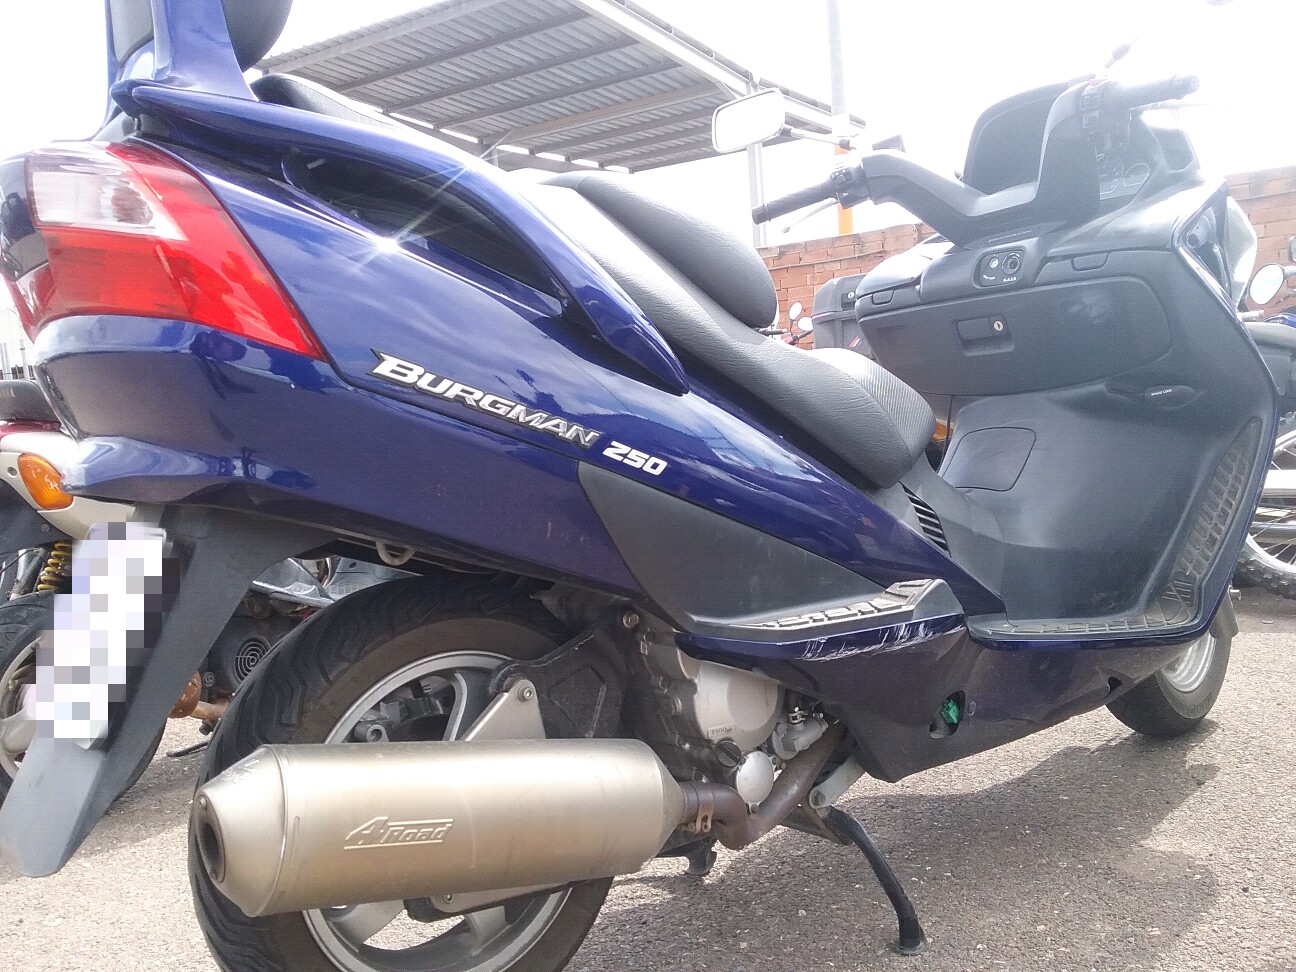 Motocicleta que conduca el infractor detenido por la Polica Local 16 de marzo